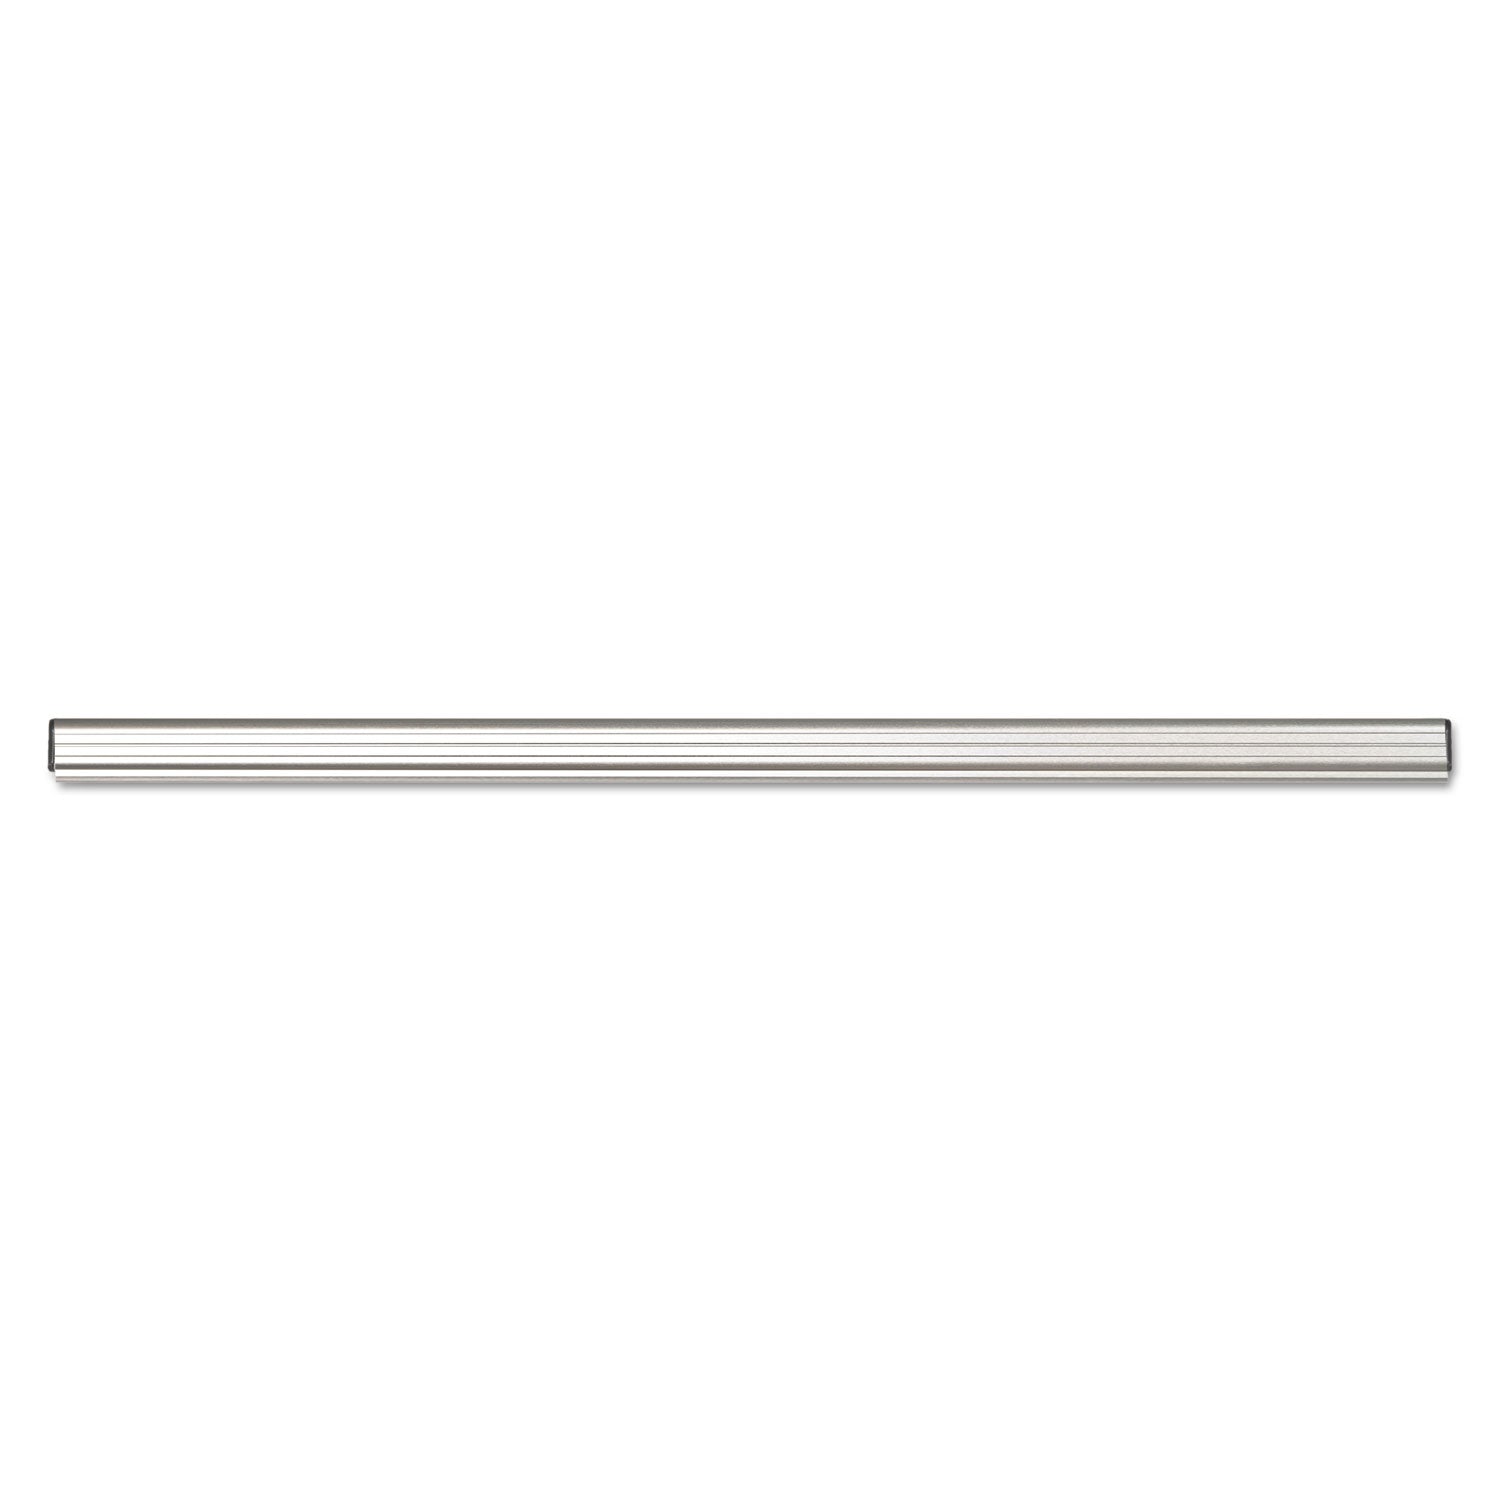 Grip-A-Strip Display Rail, 36 x 1.5, Aluminum Finish - 